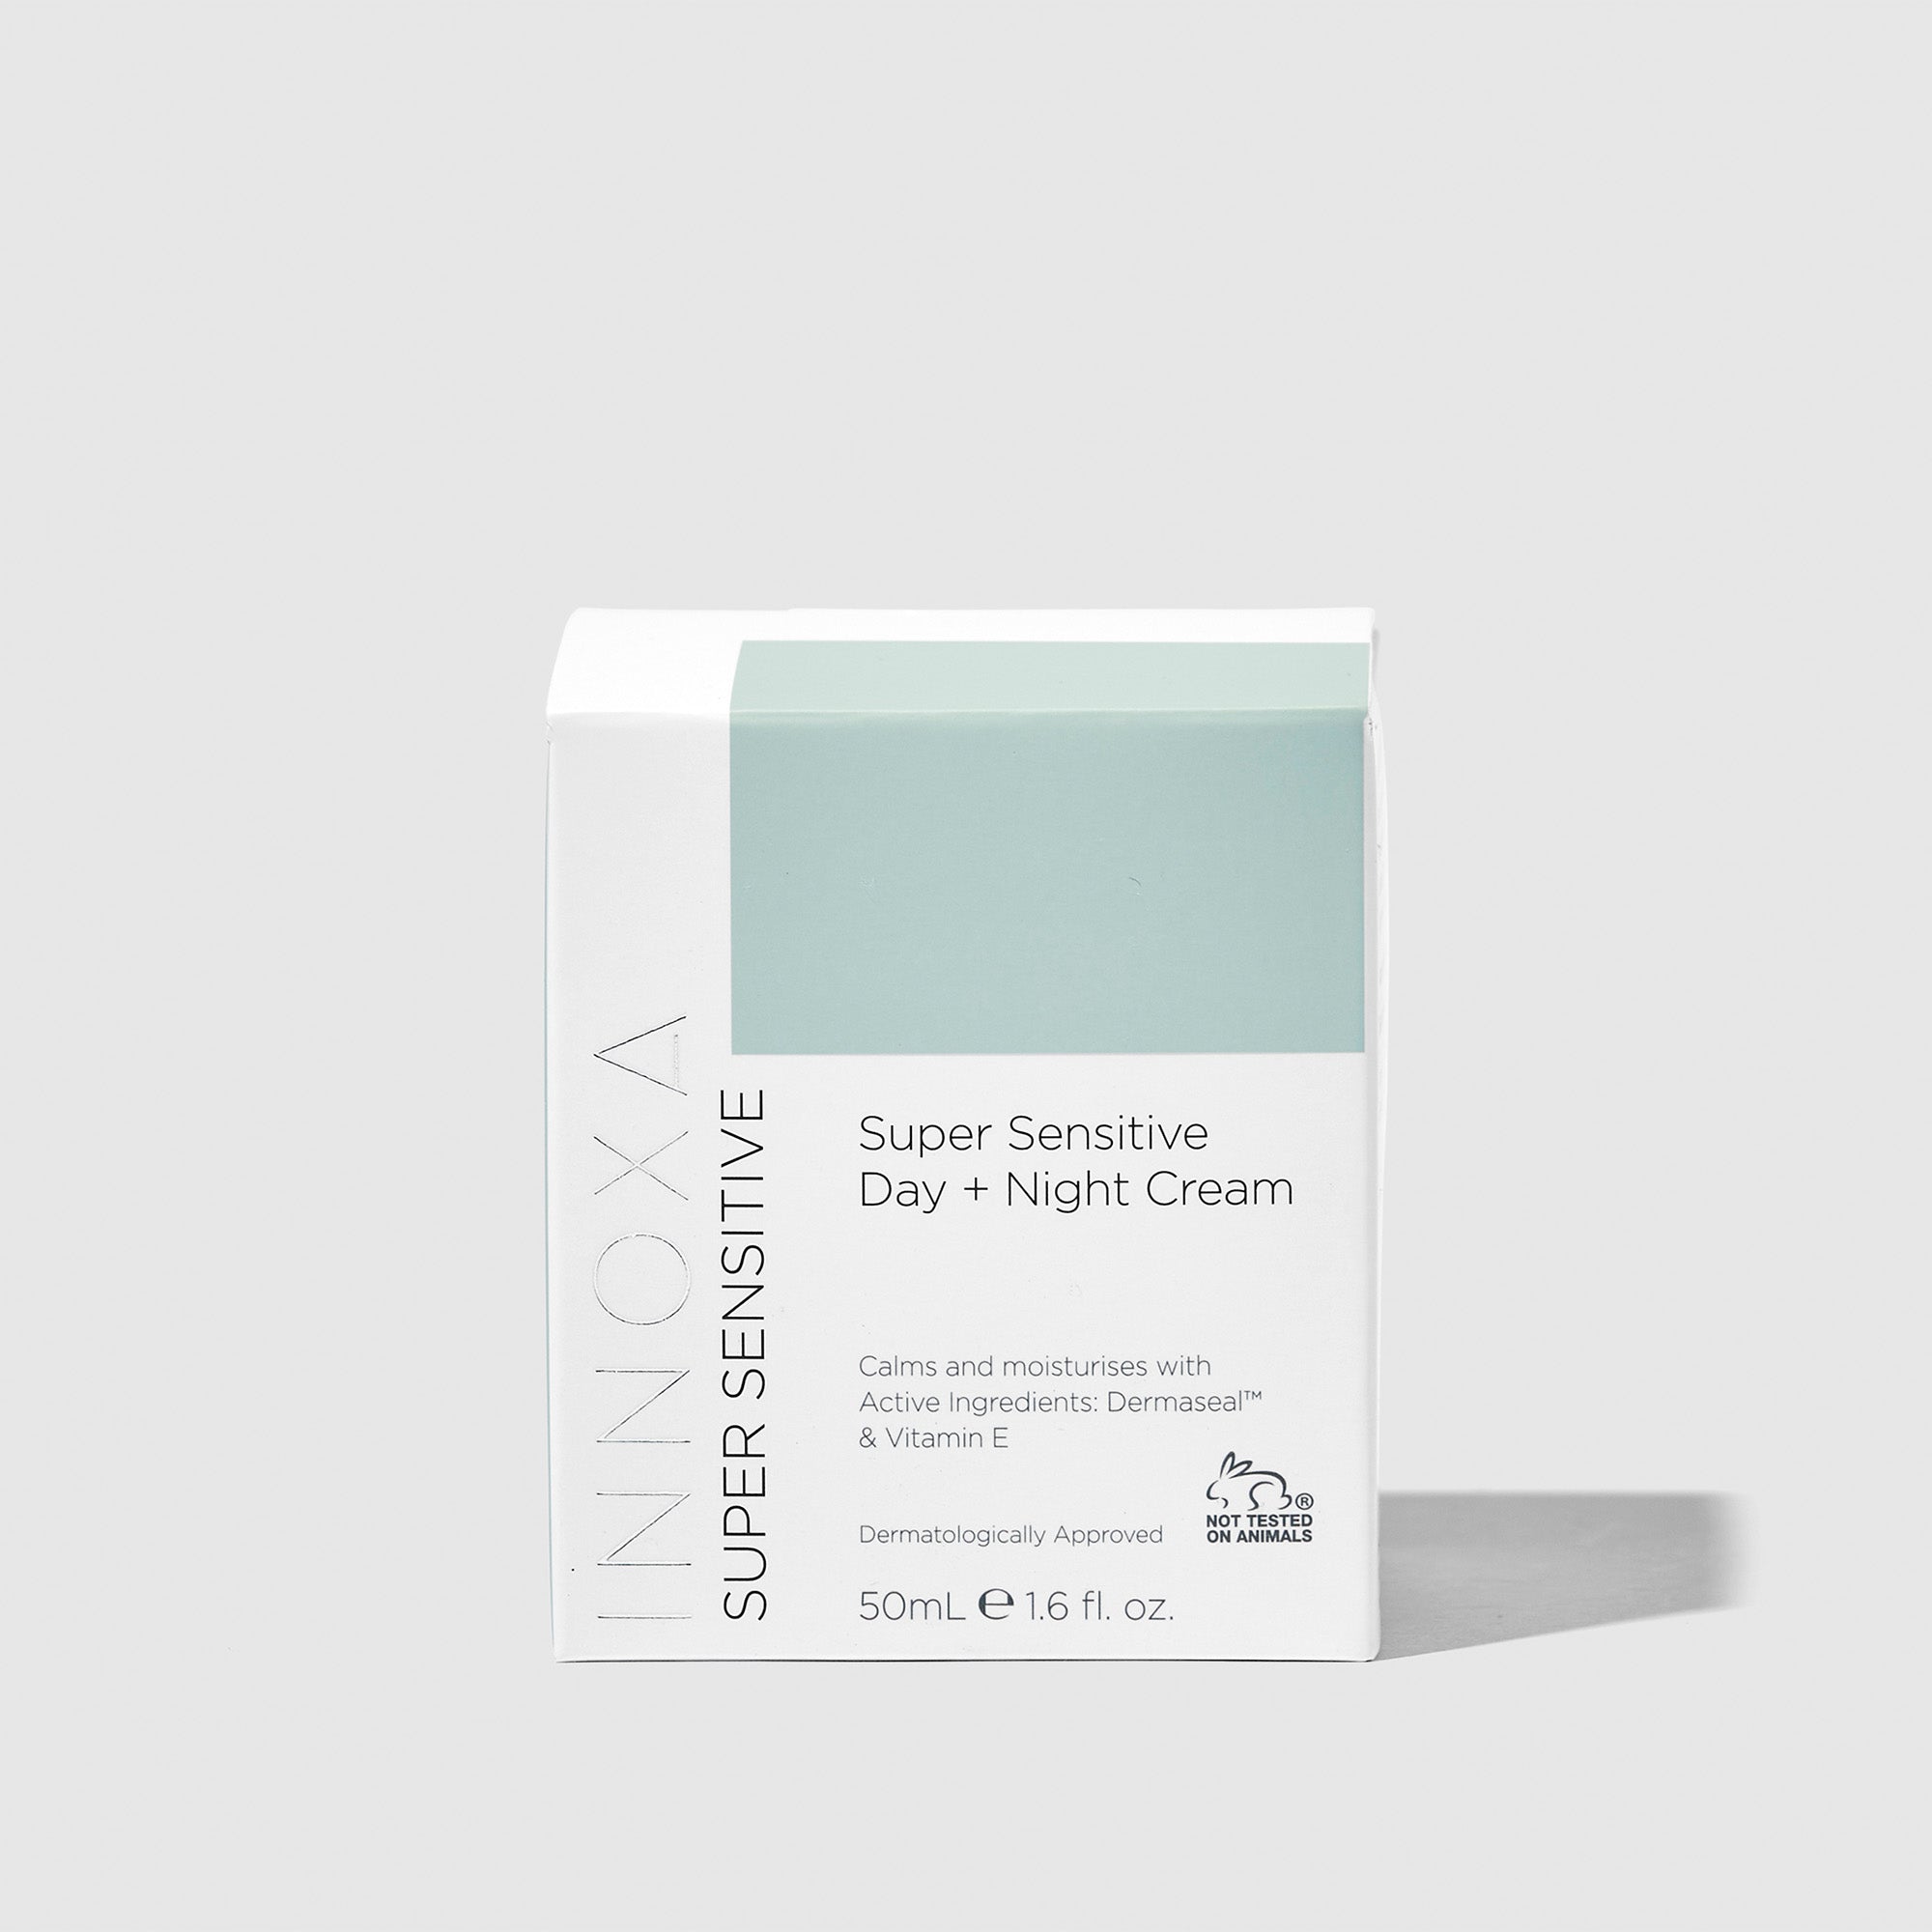 Super Sensitive Day + Night Cream